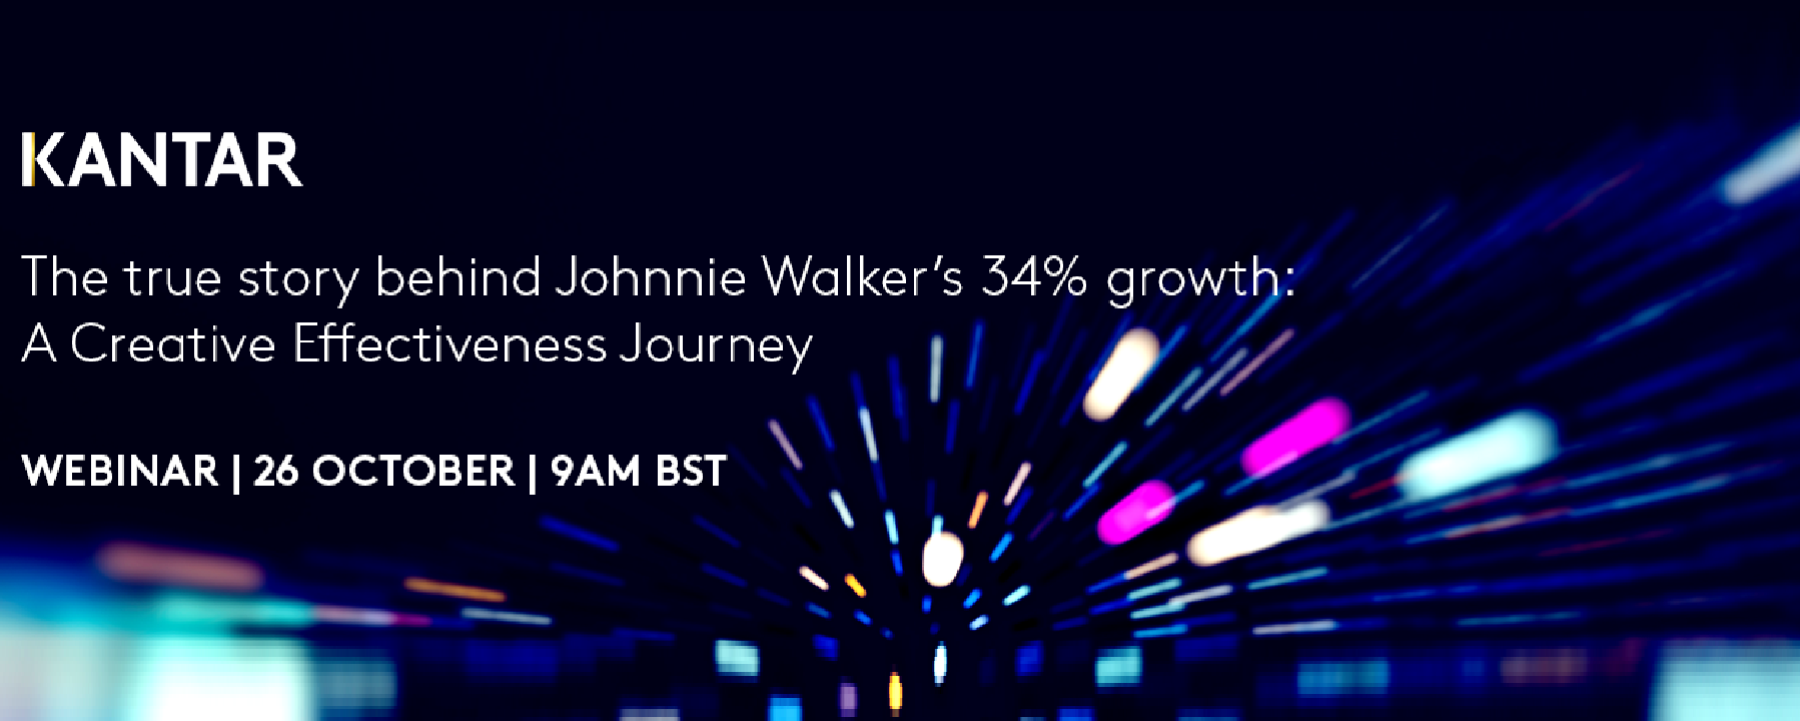 La véritable histoire derrière la croissance de 34 % de Johnnie Walker : un parcours d’efficacité créative